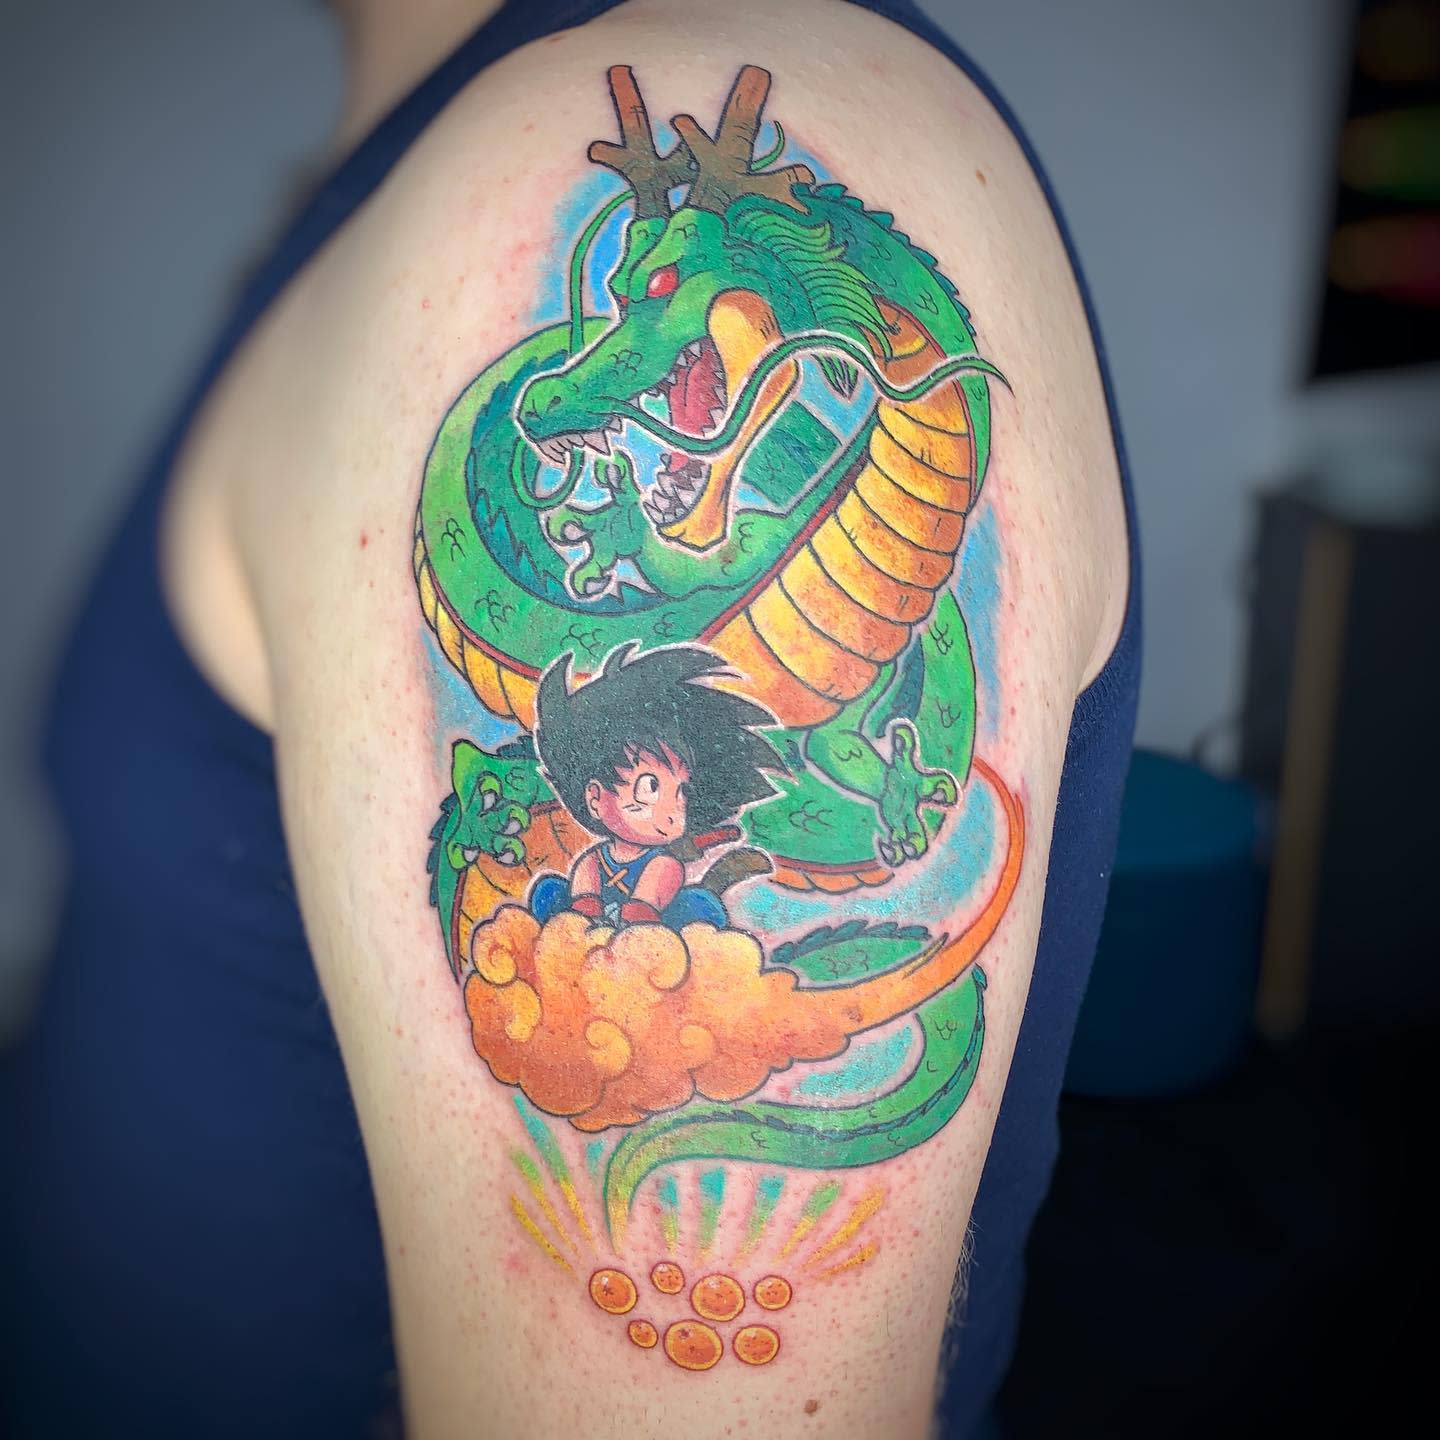 Tattoo uploaded by Andre Castro Savastano • #goku #dragonballtattoo  #dragonballz #dragonball #gokutattoo Goku dragon ball z tattoo #comics •  Tattoodo